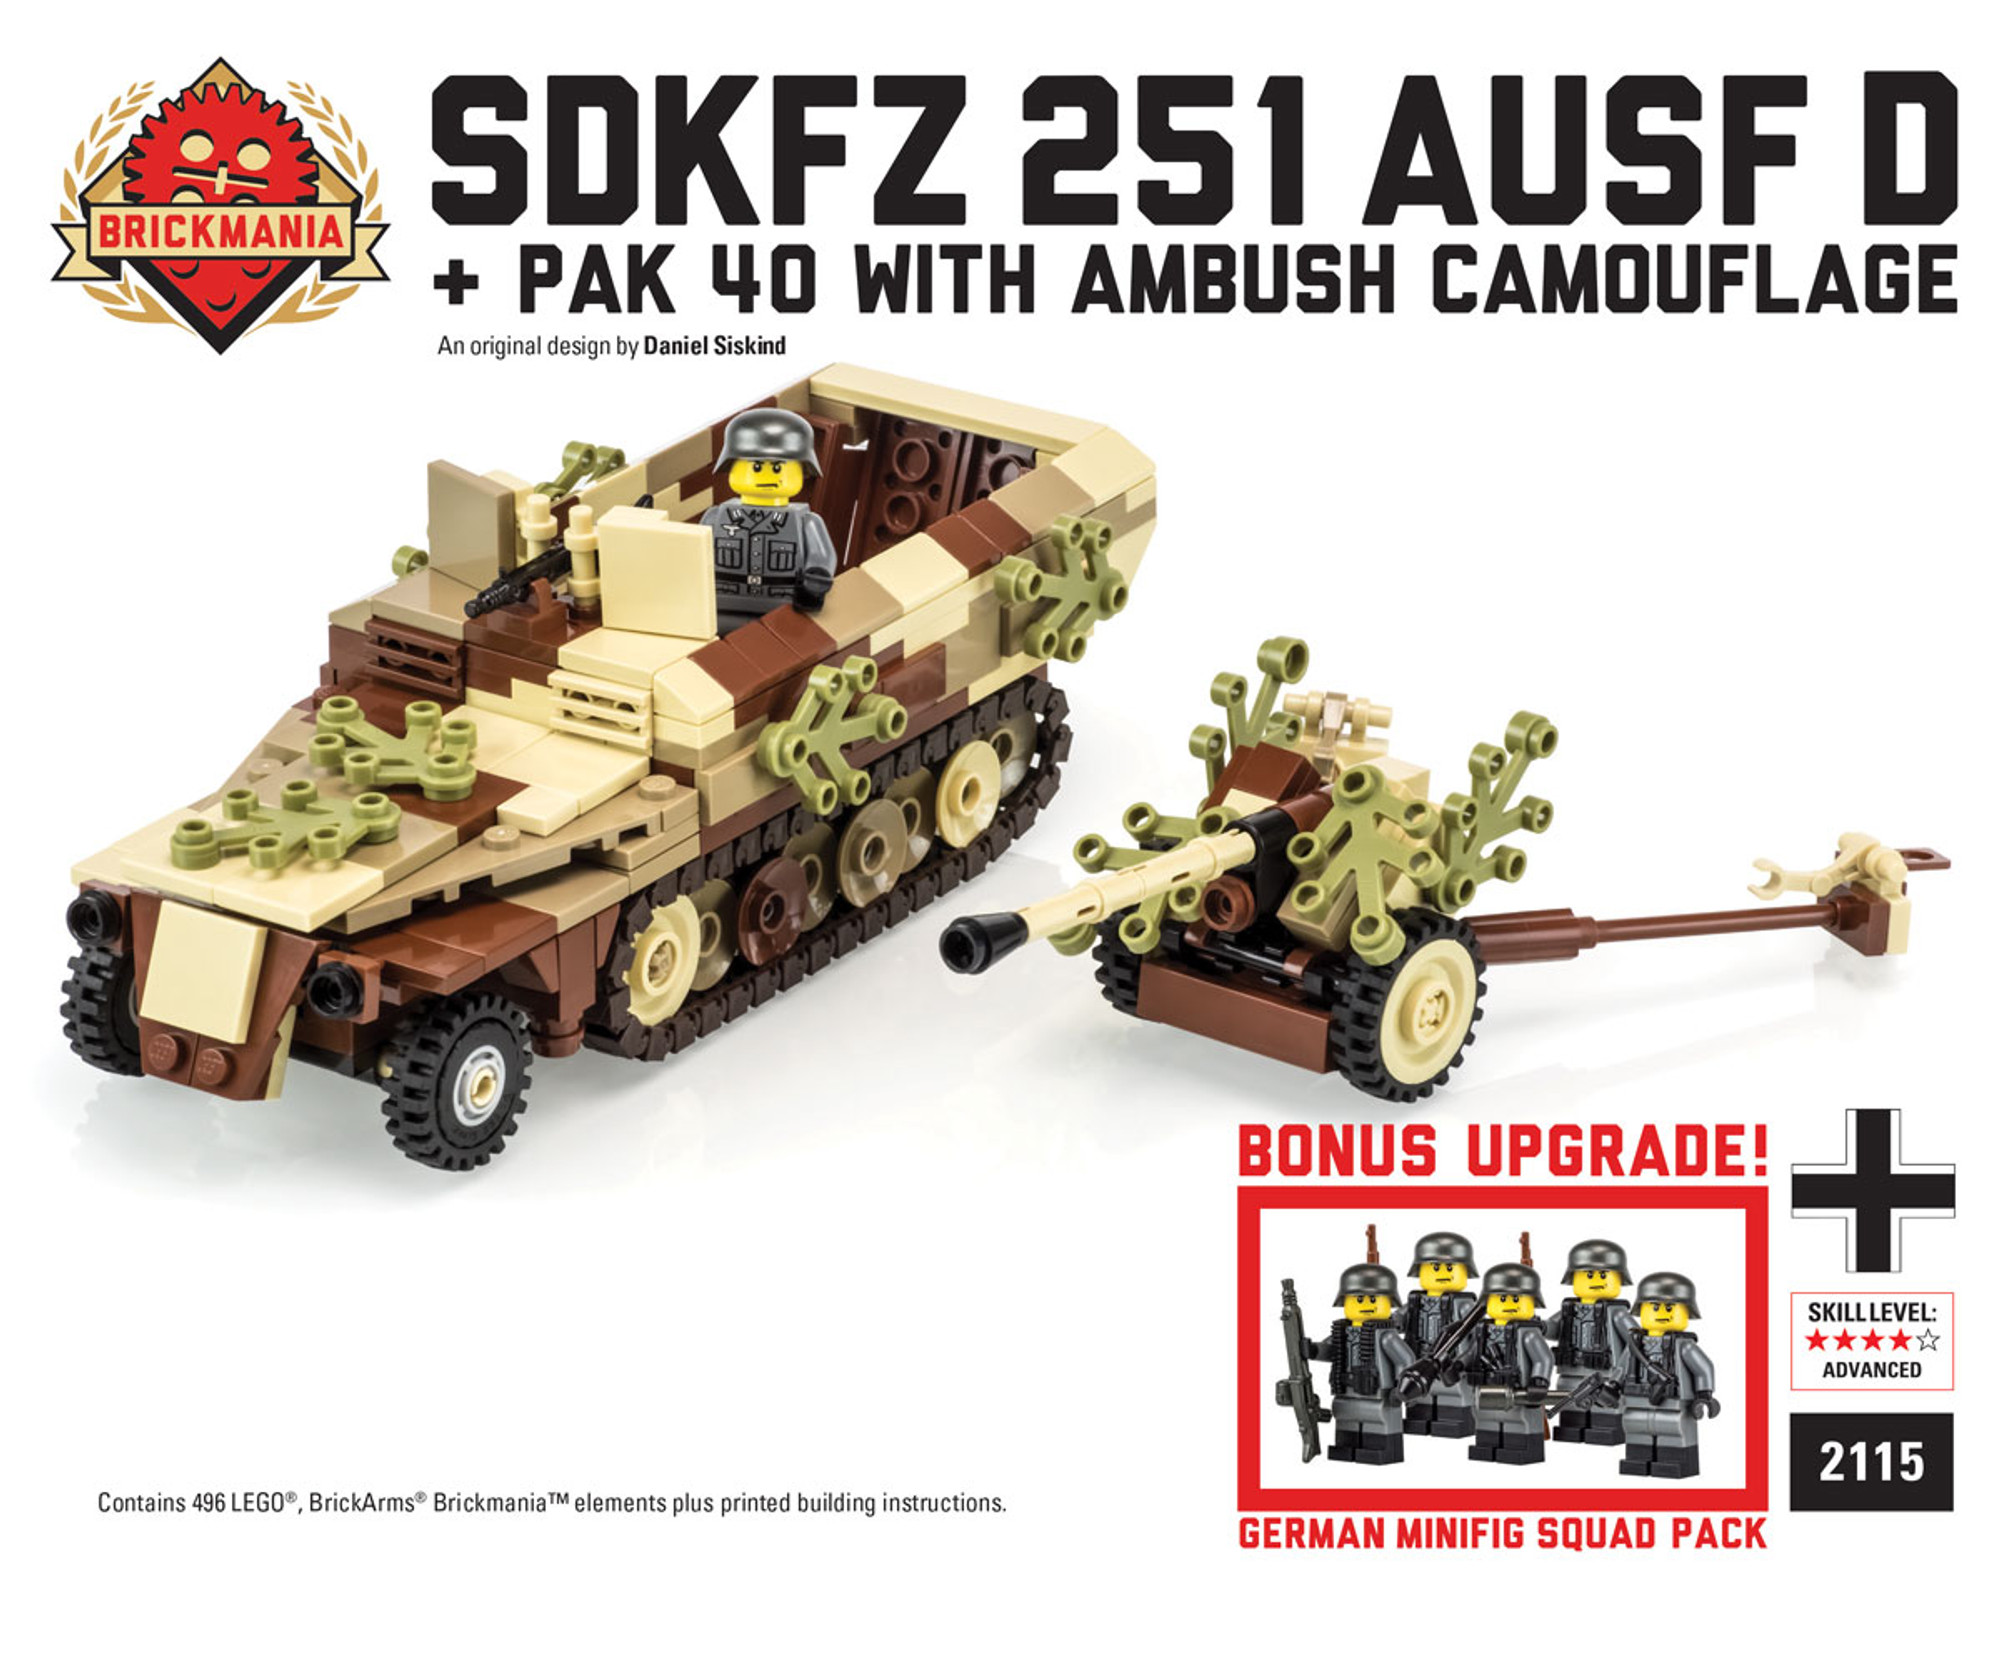 22000円でどうでしょうかbrickmania製 WW2ドイツ軍SDKFZ 251 AUSF D